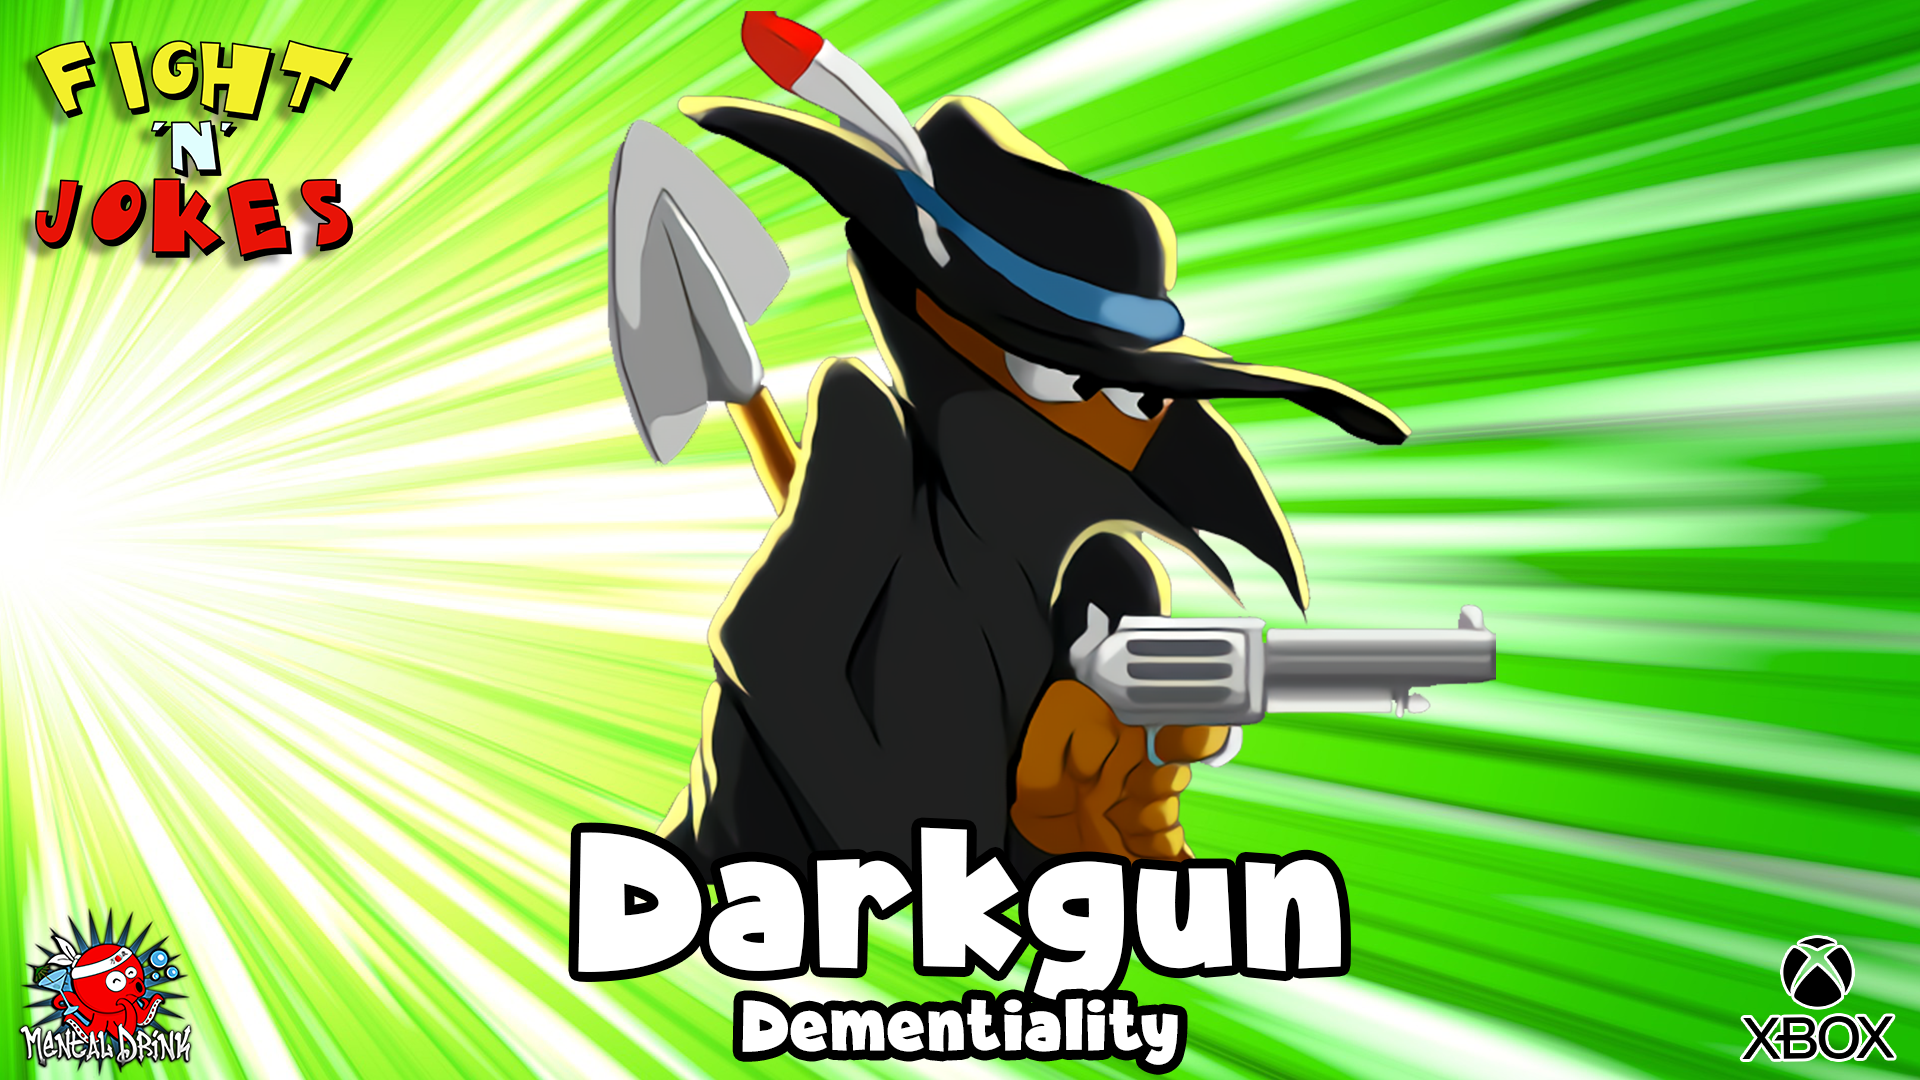 Icon for Dementiality - Darkgun